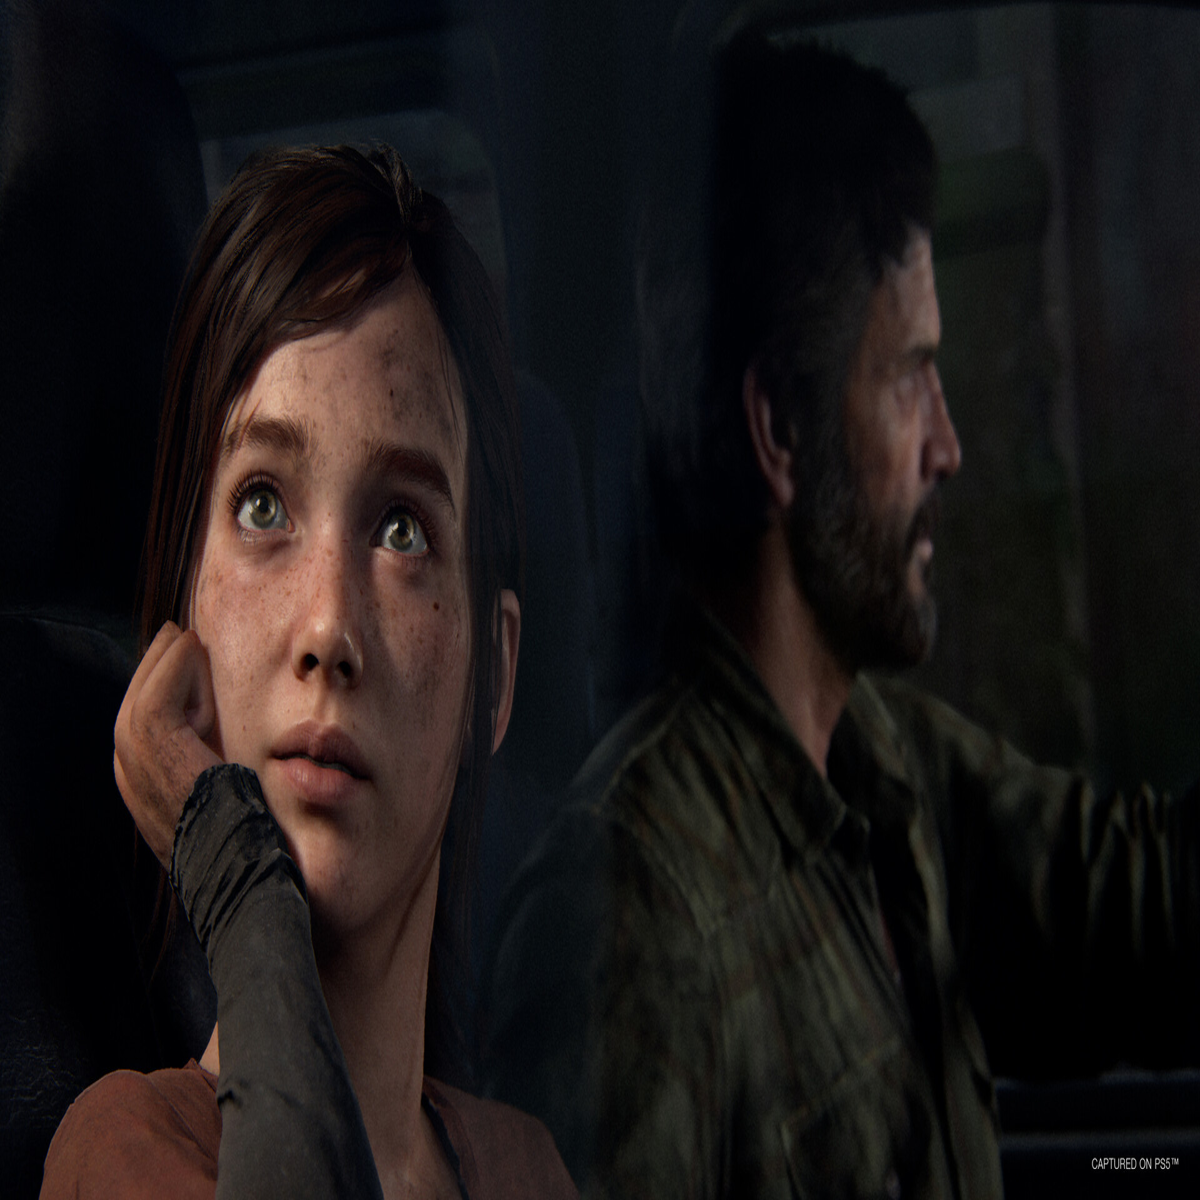 Quais os requisitos mínimos para jogar The Last of Us part I no PC